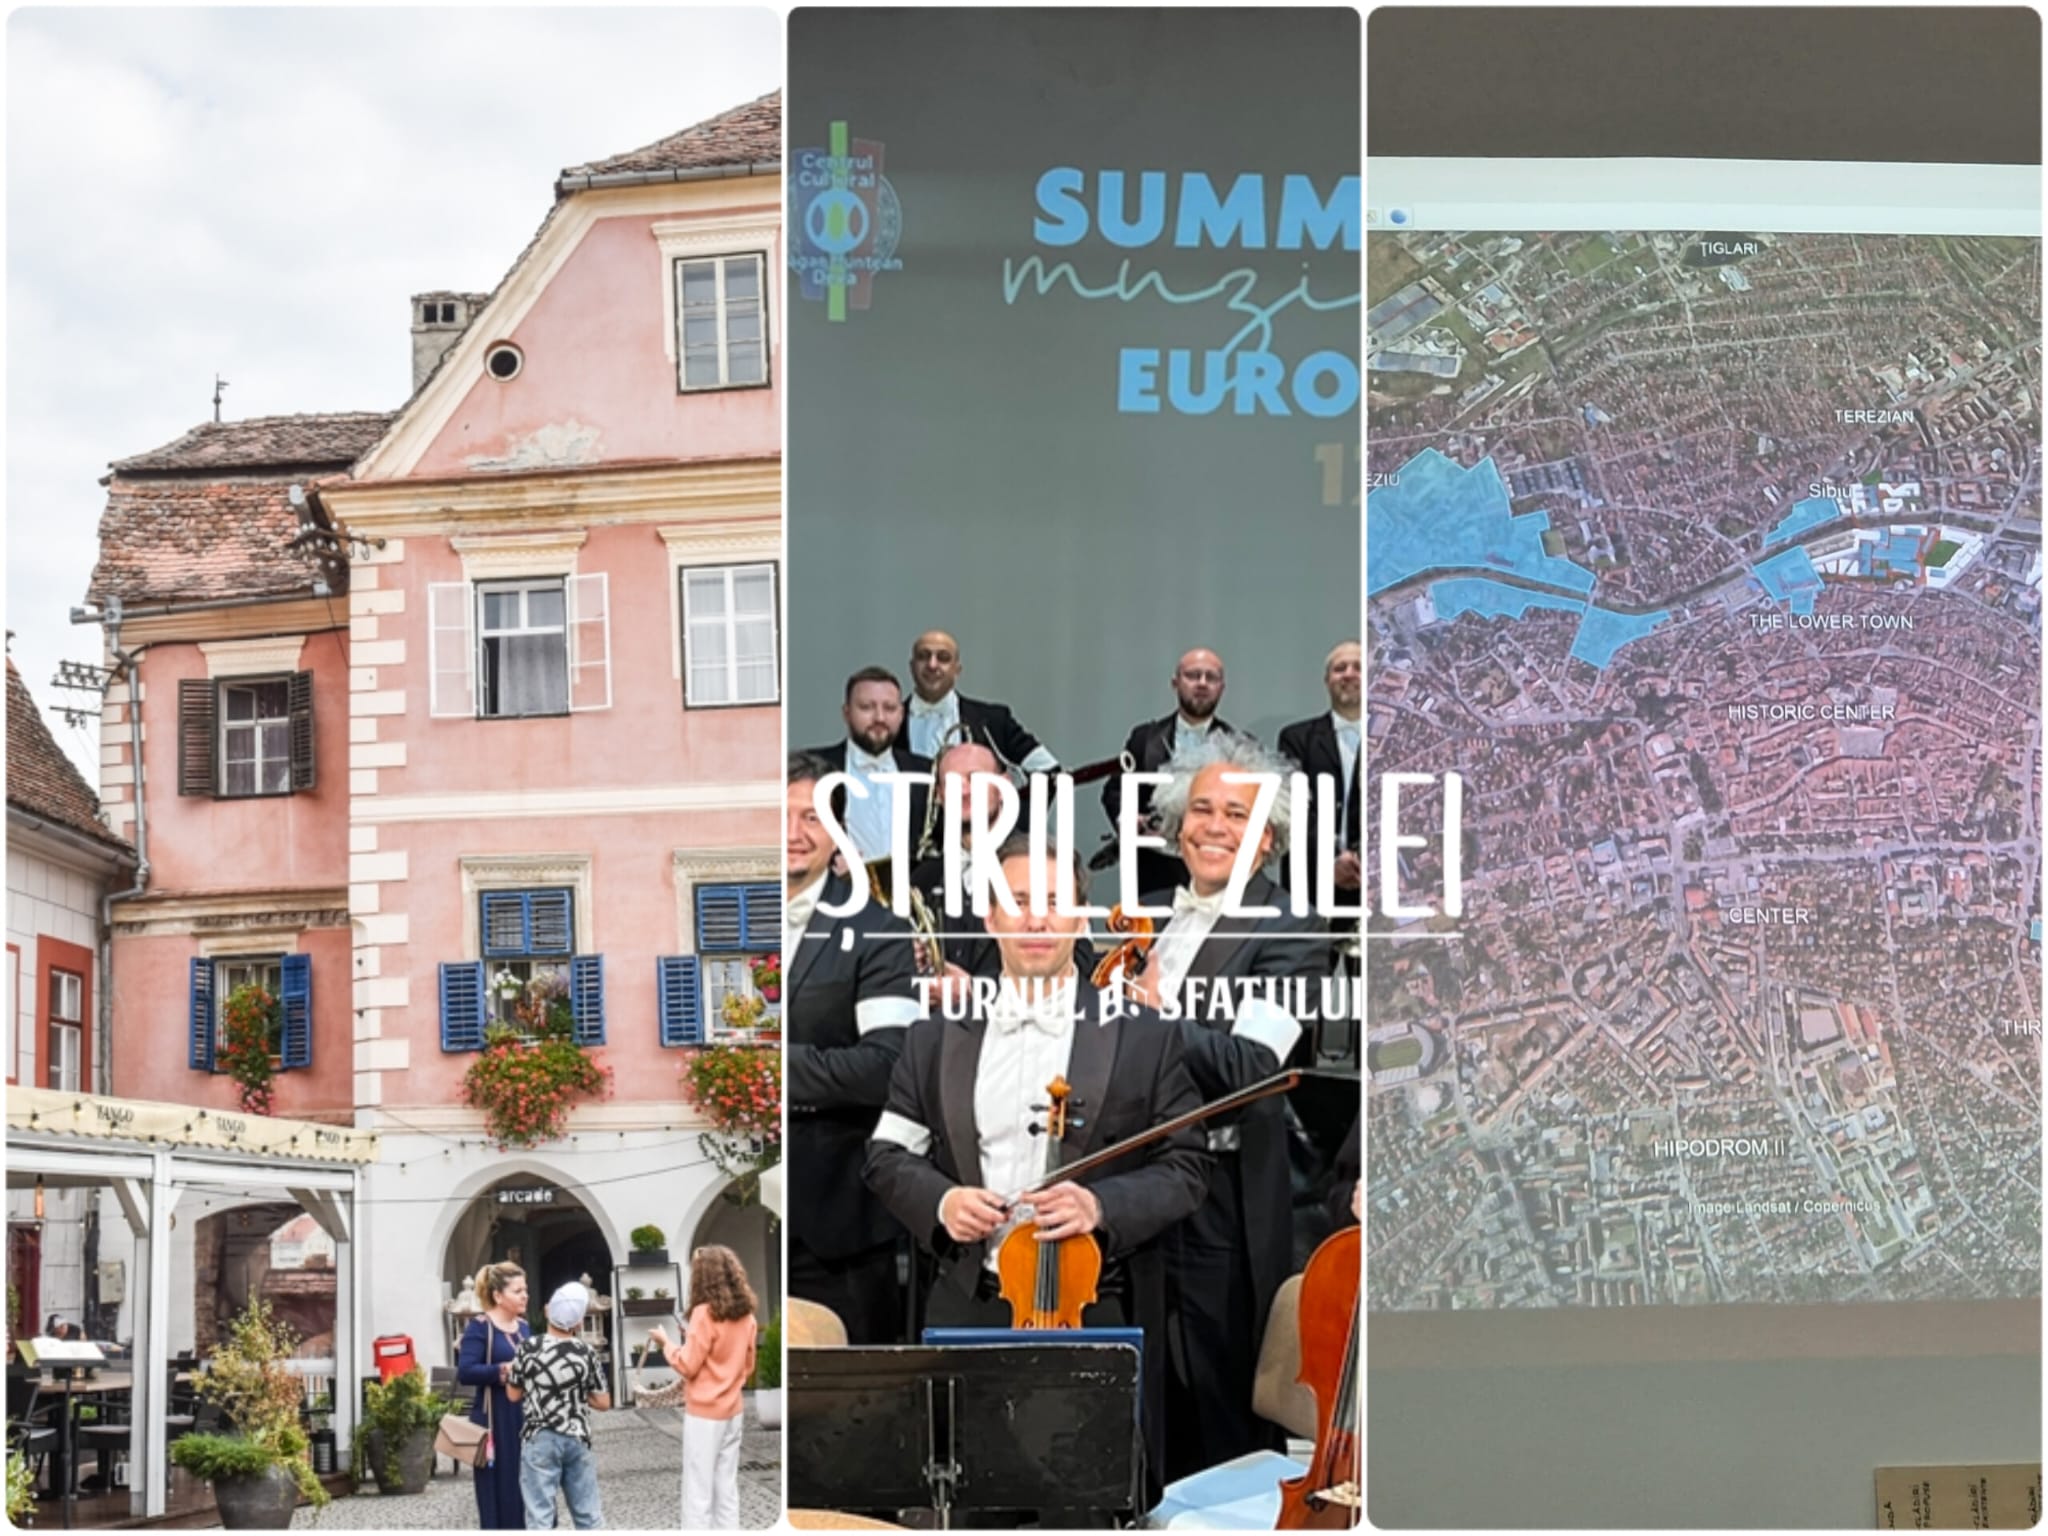 Știrile zilei - 6 octombrie: Scandal la Filarmonică, monument istoric de vânzare și cum se dezvoltă Sibiul